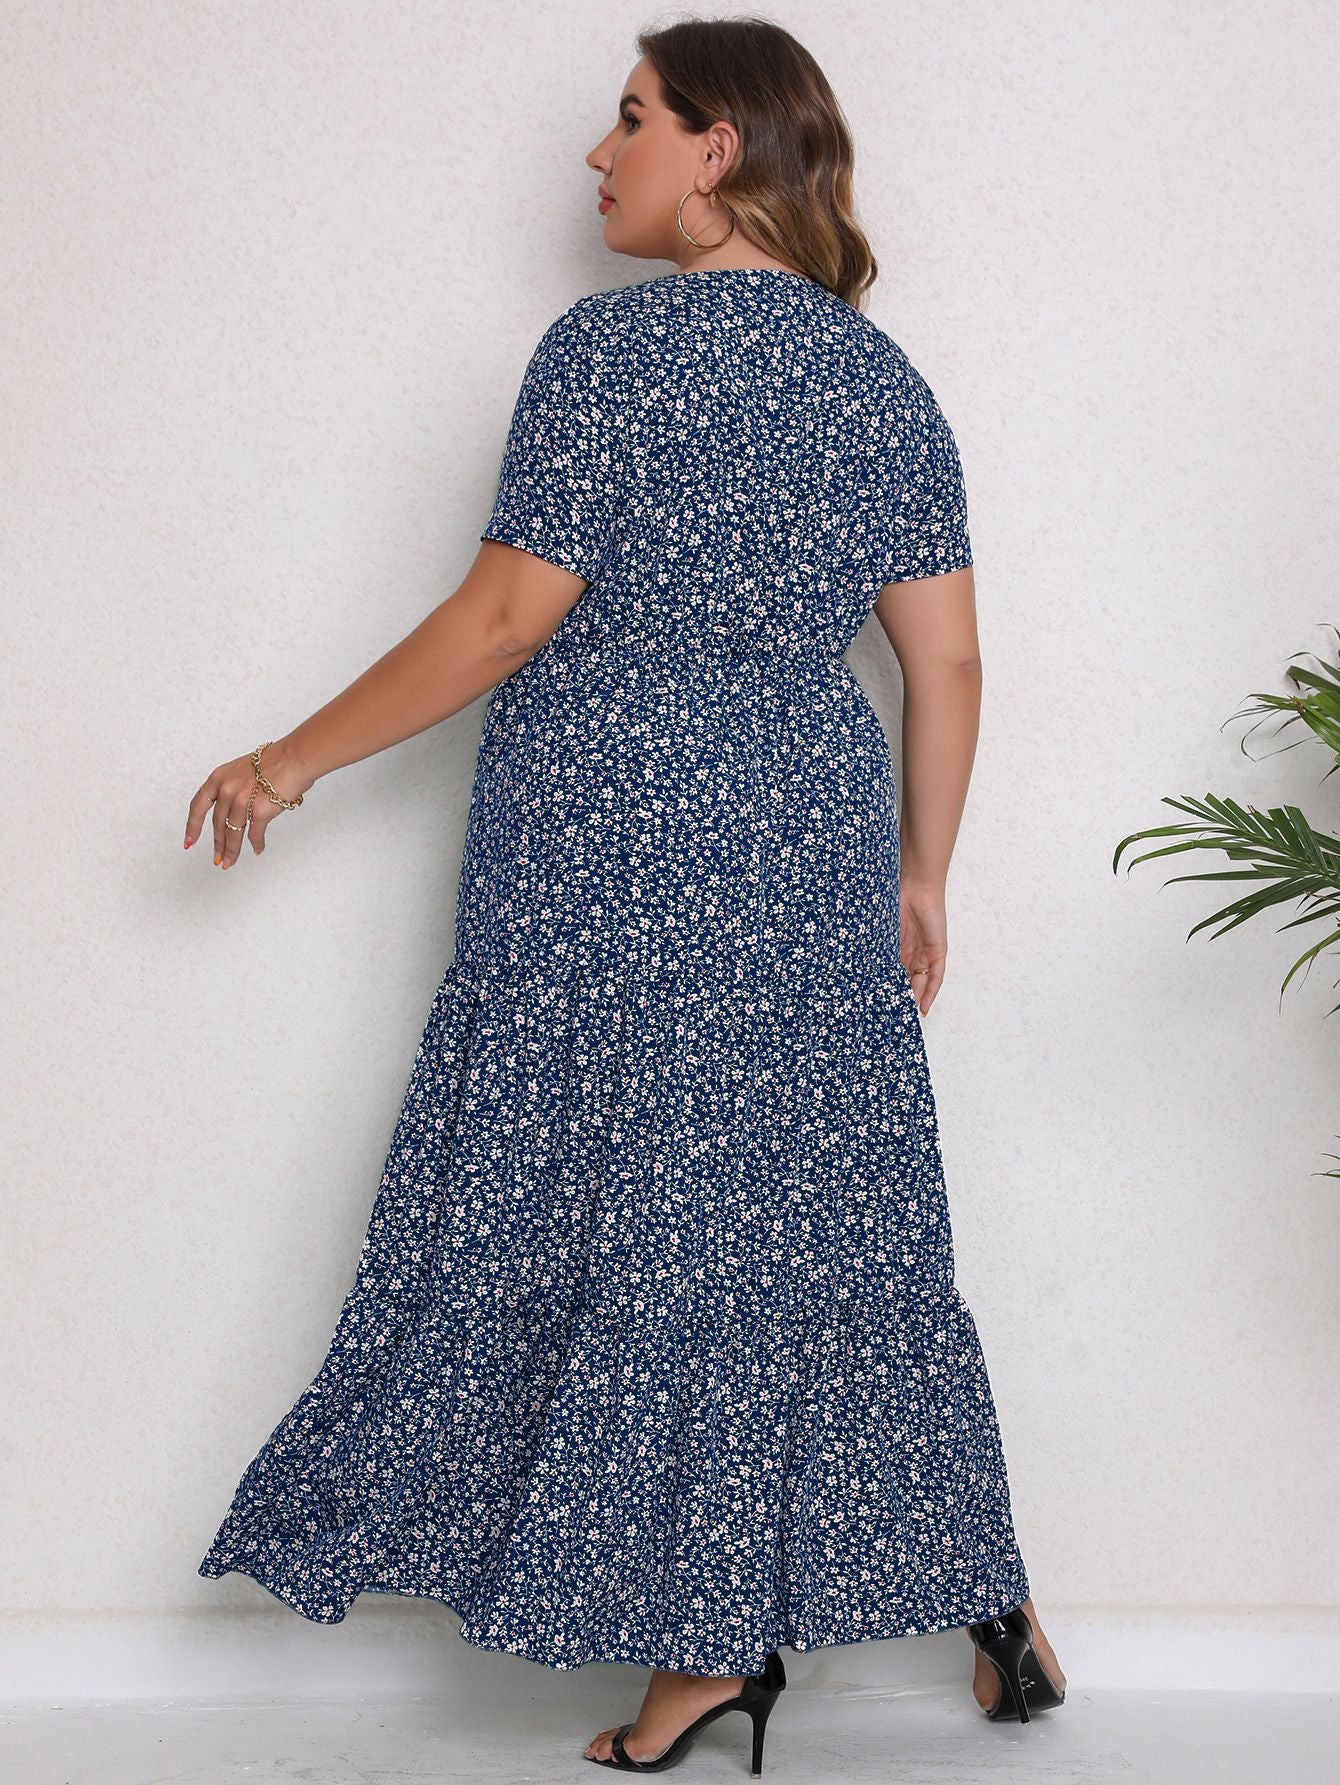 Plus Size Blue Floral Print Summer Maxi Dress